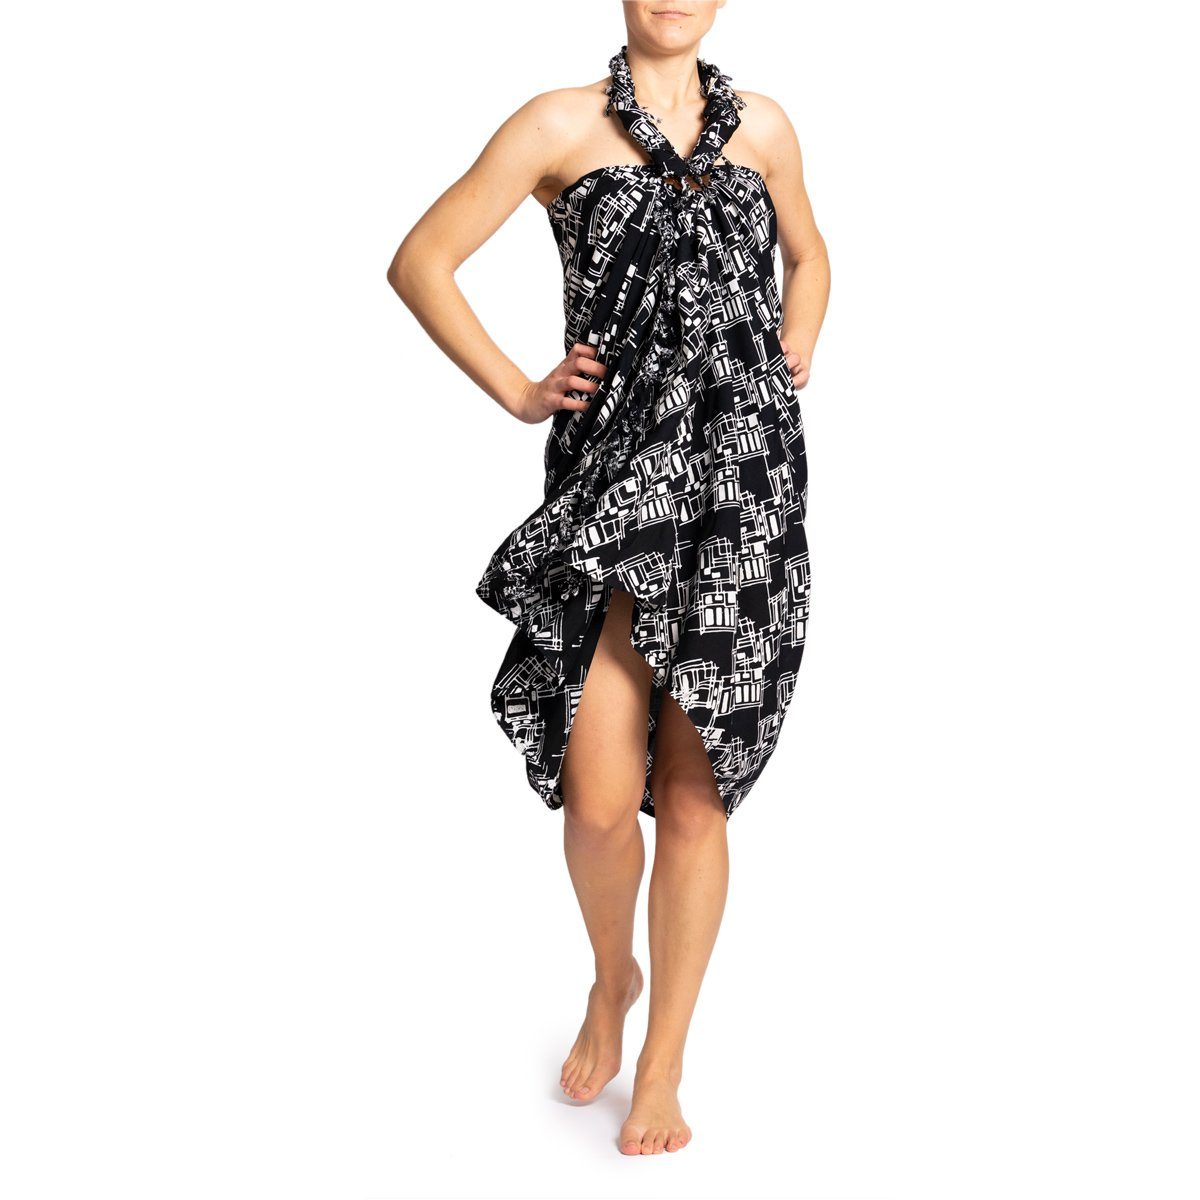 PANASIAM Pareo Sarong Wachsbatik schwarz-weiß aus hochwertiger Viskose Strandtuch, Strandkleid Bikini Cover-up Tuch für den Strand Schultertuch Halstuch B902 black rectangle